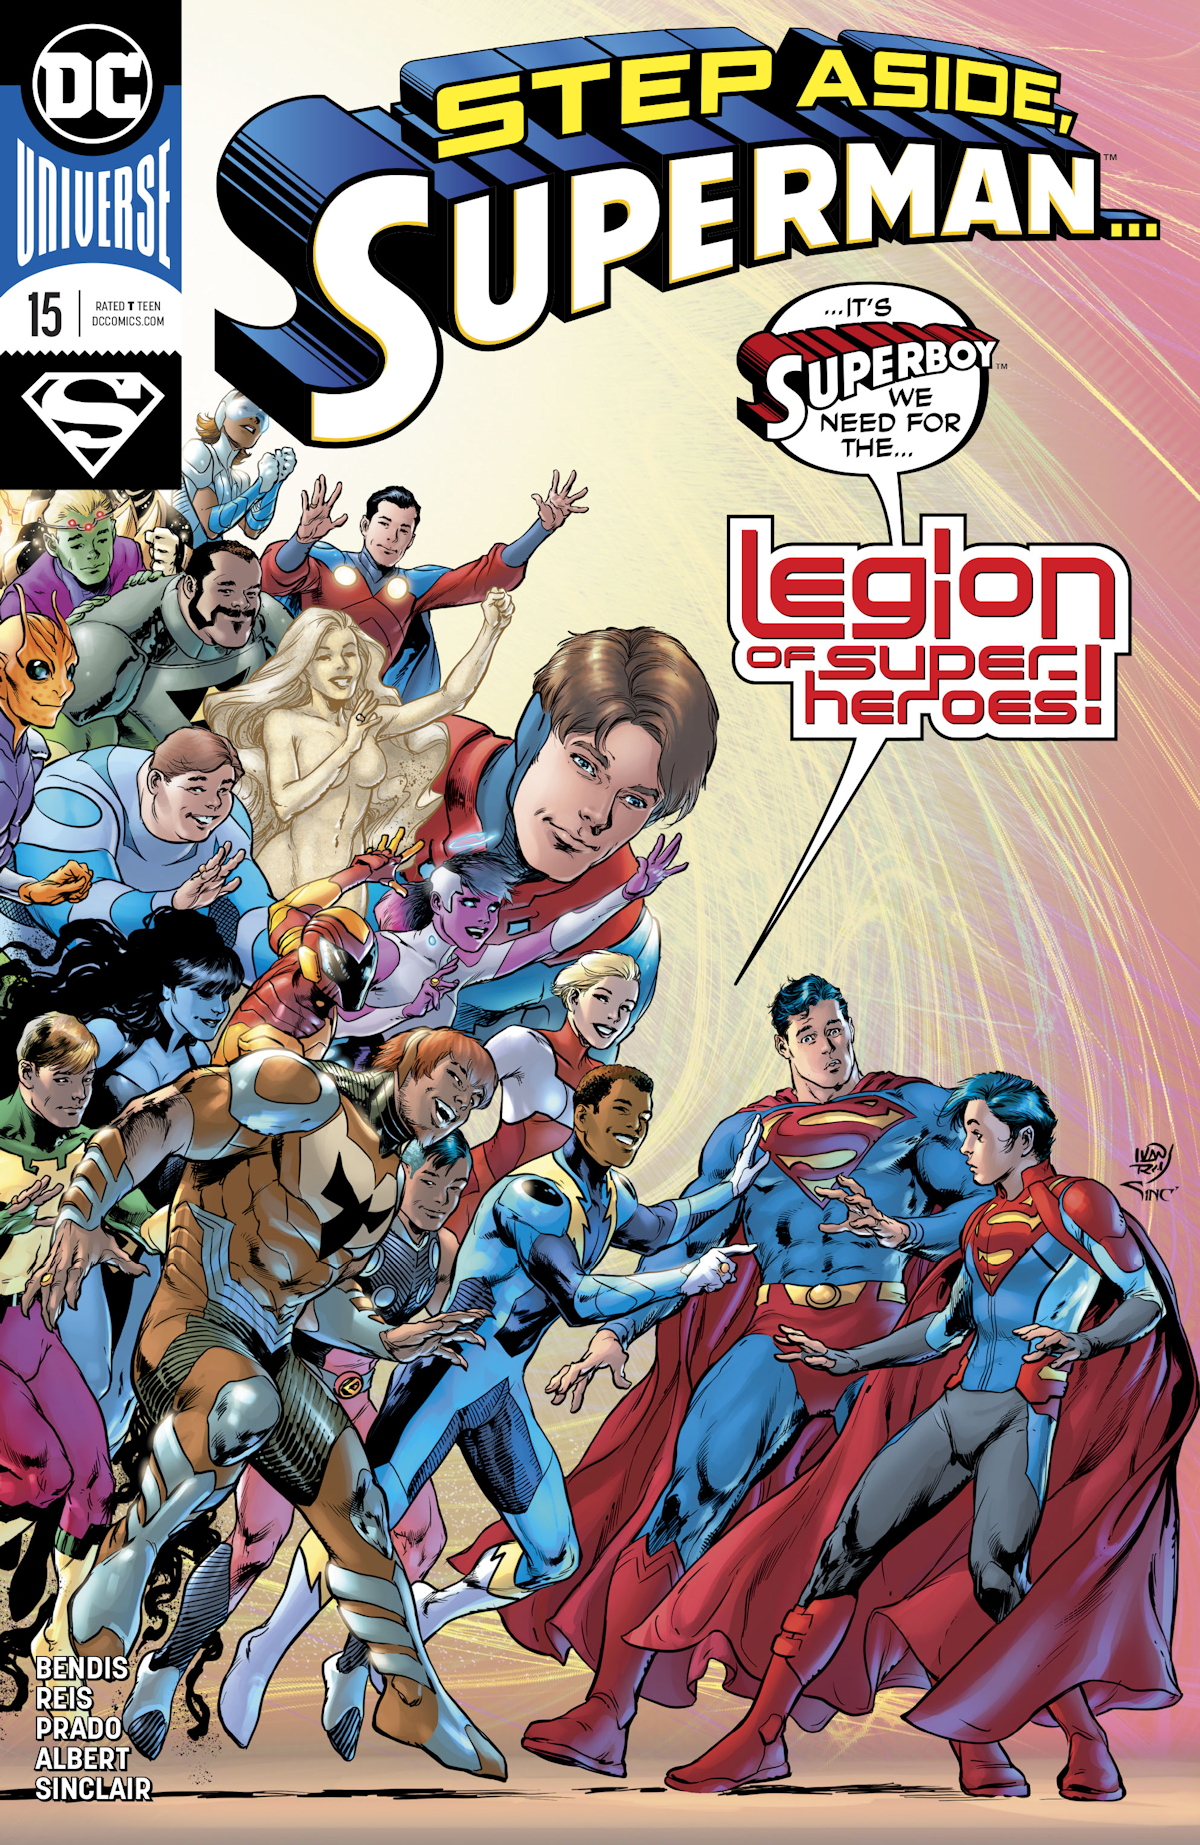 Superman Vol. 5 15 (Cover A)